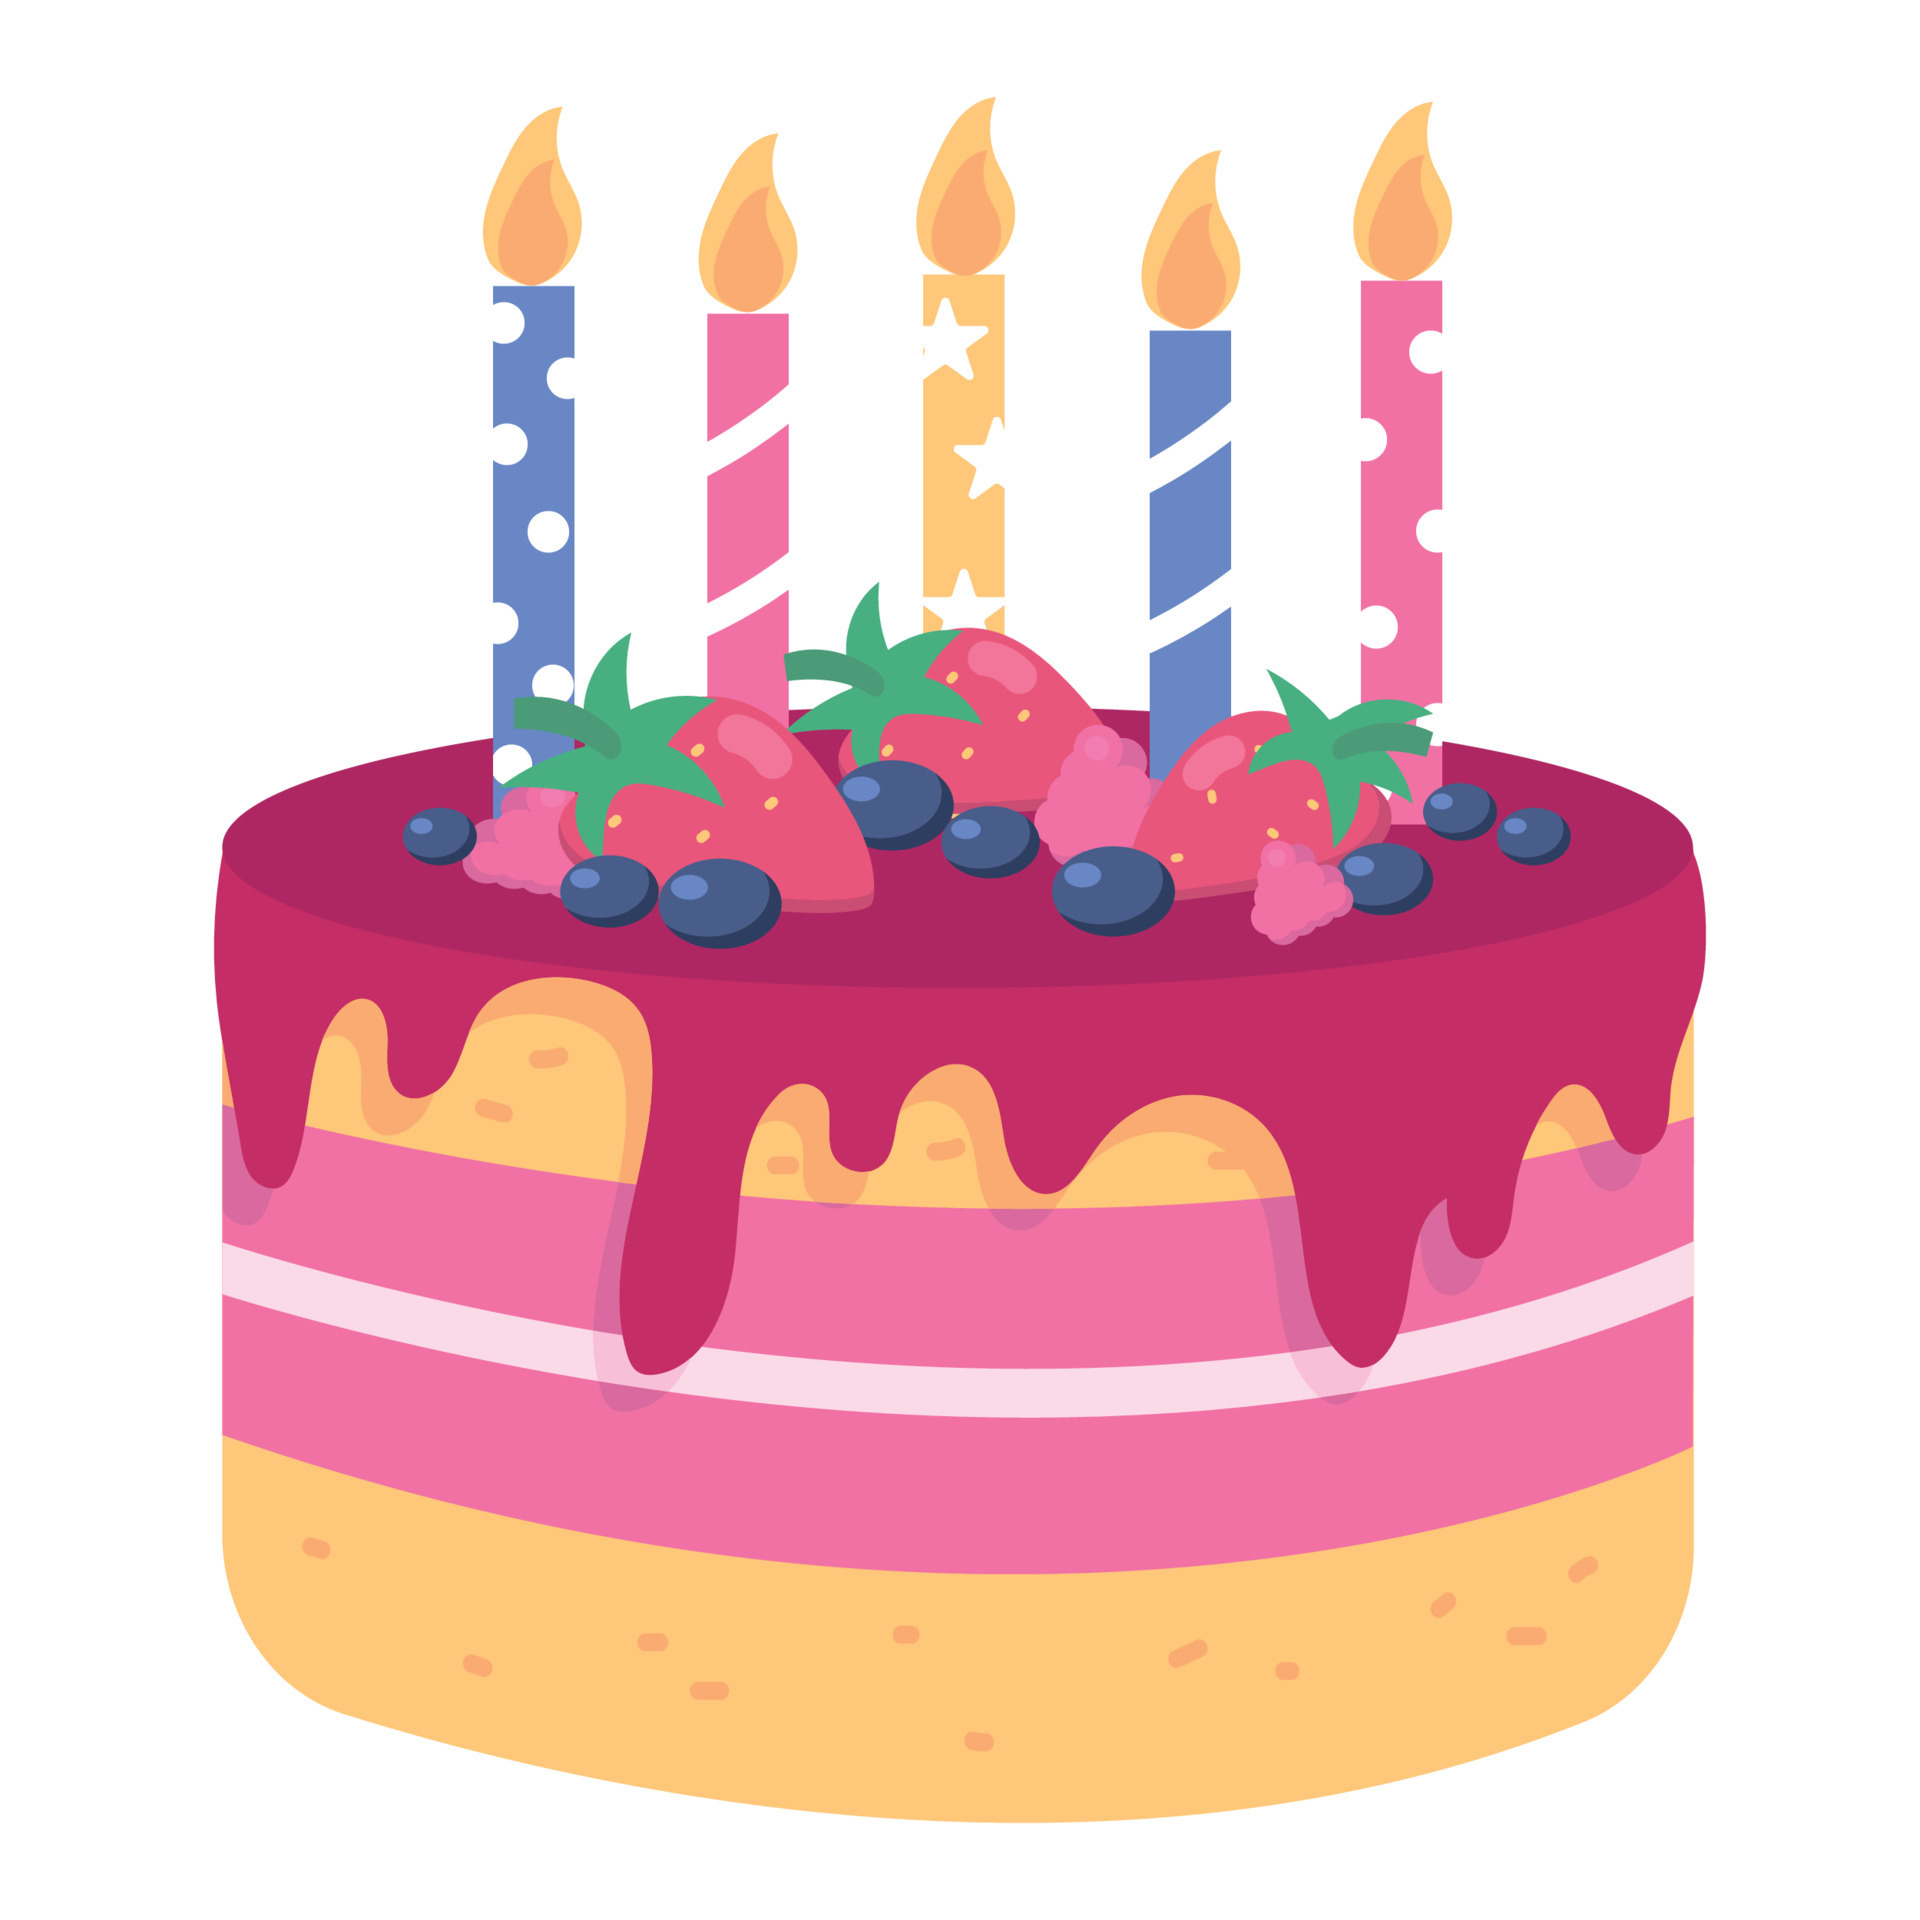 mão desenhada bolo de aniversário colorido com velas isoladas em branco.  ilustração vetorial em estilo de desenho 2806363 Vetor no Vecteezy